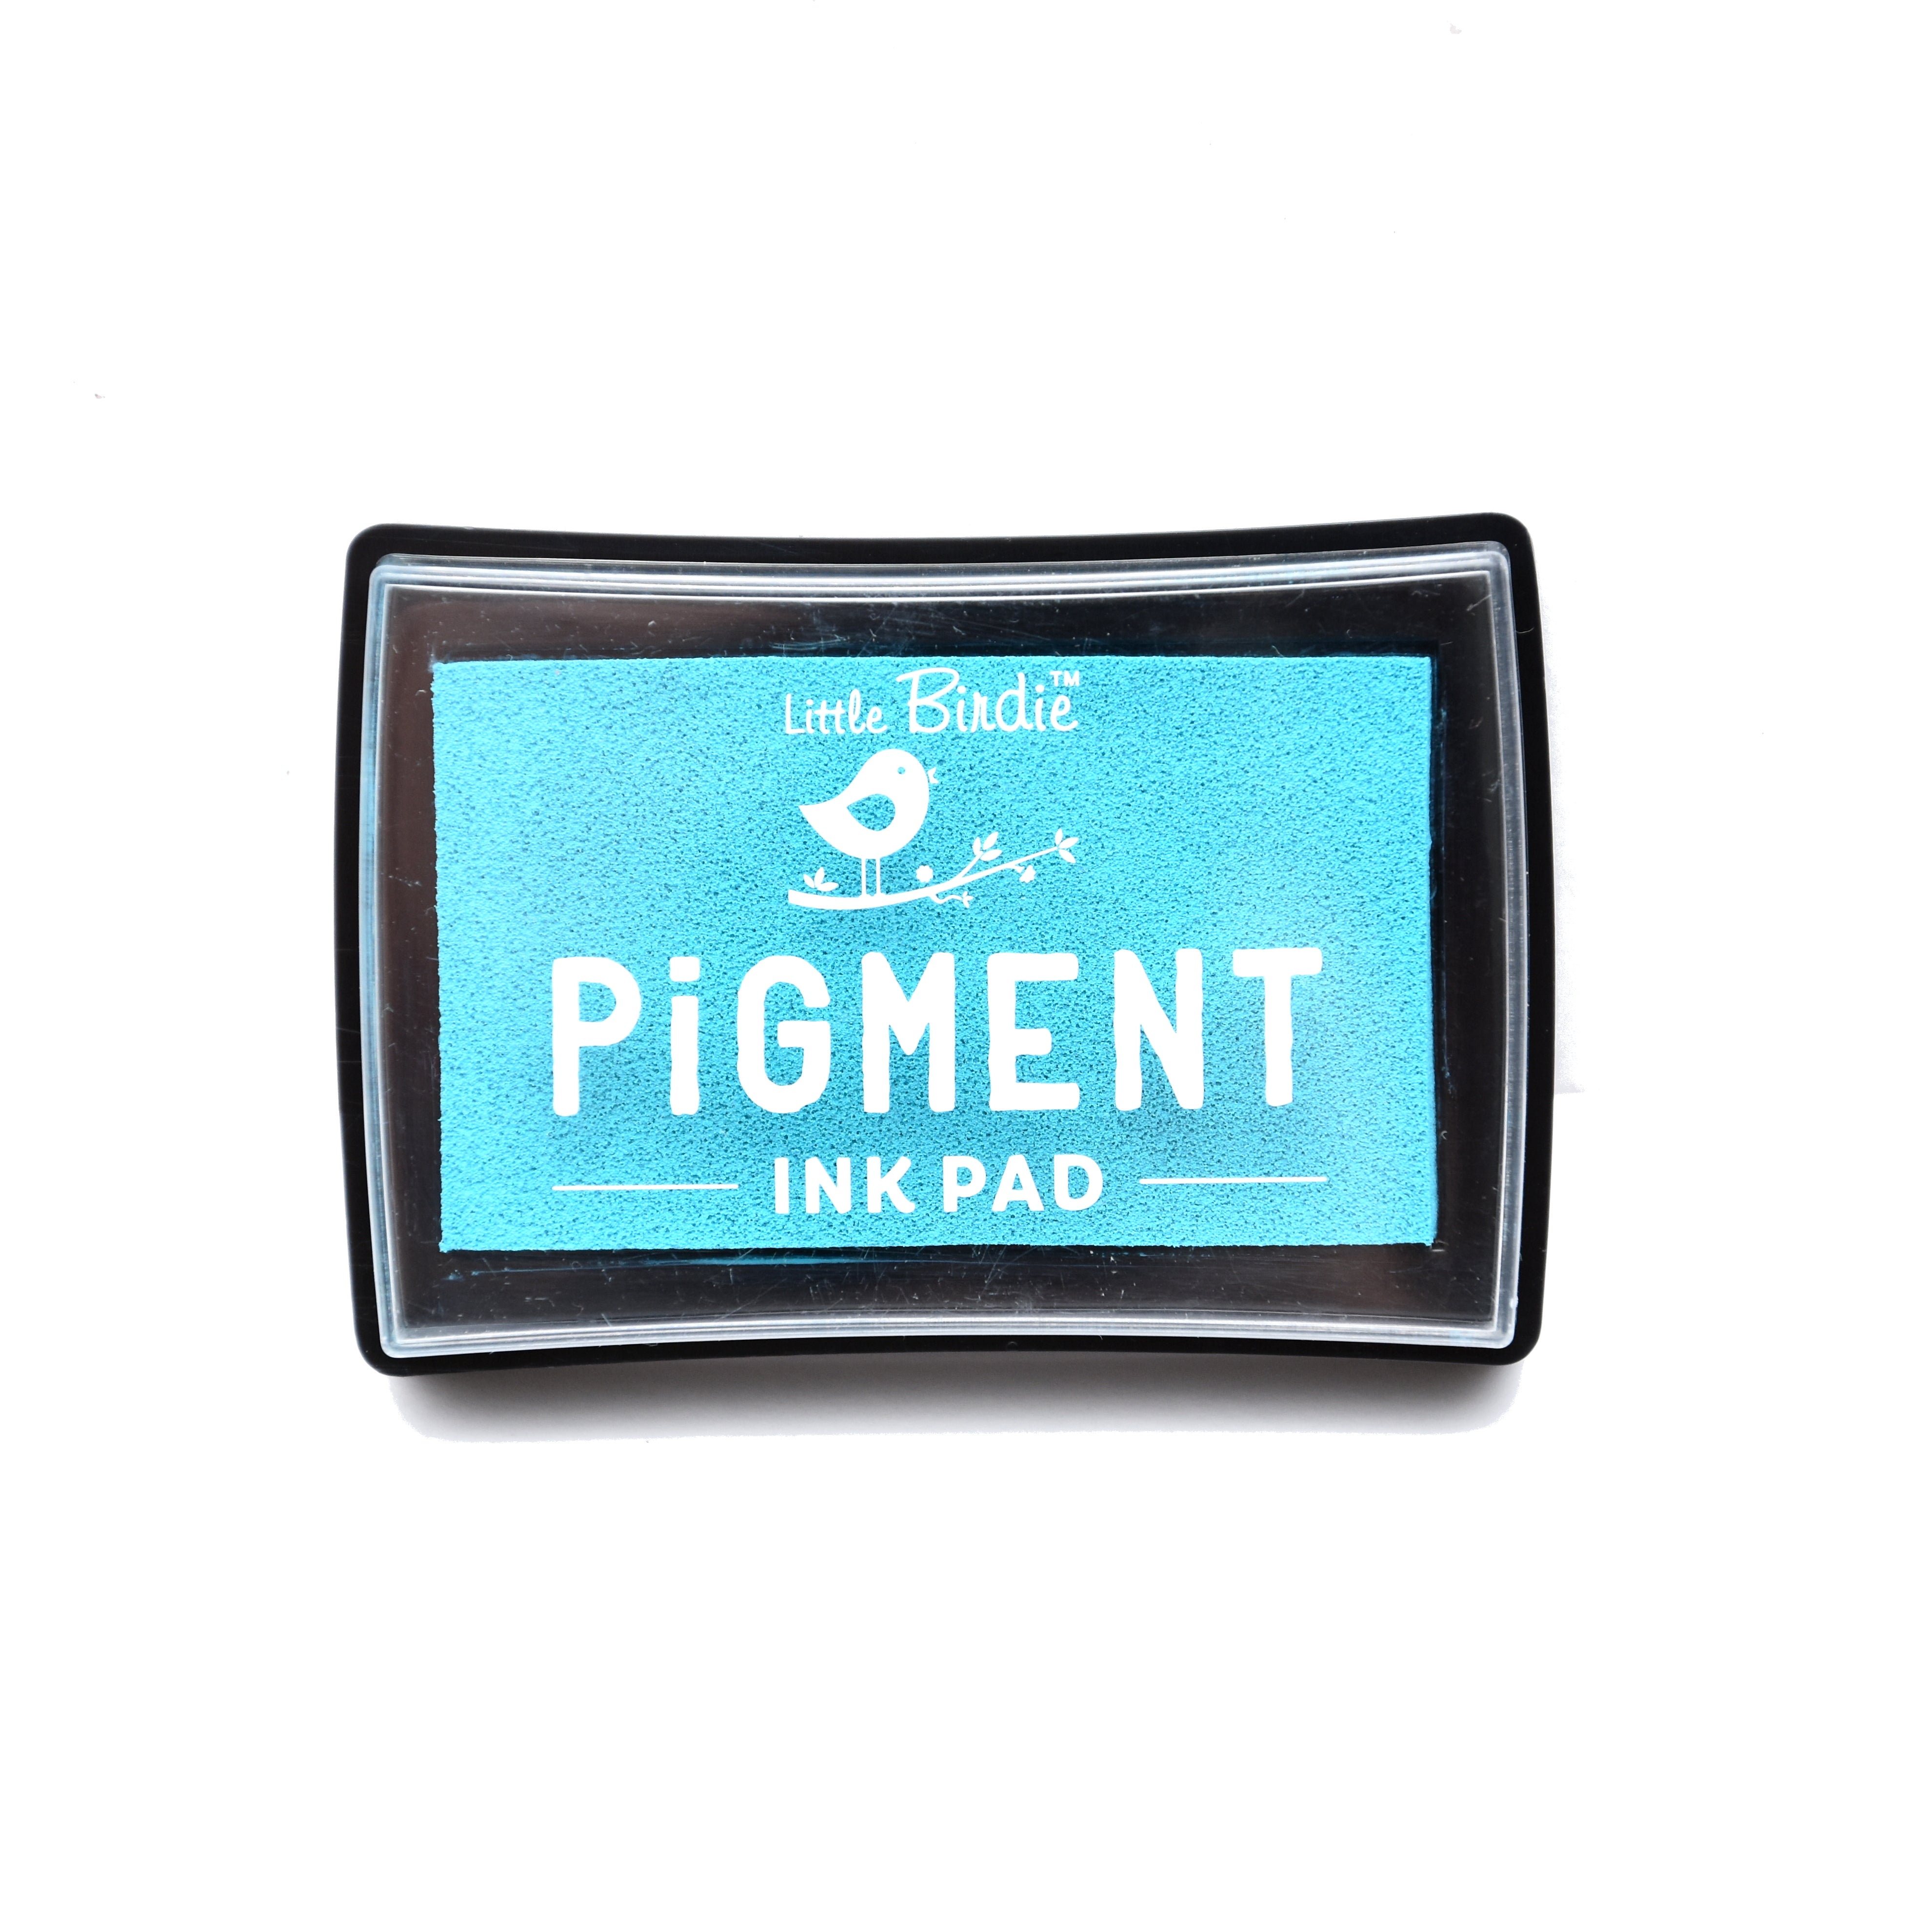 Pigment Ink Pad Aqua Bay P15 1Pc Lb